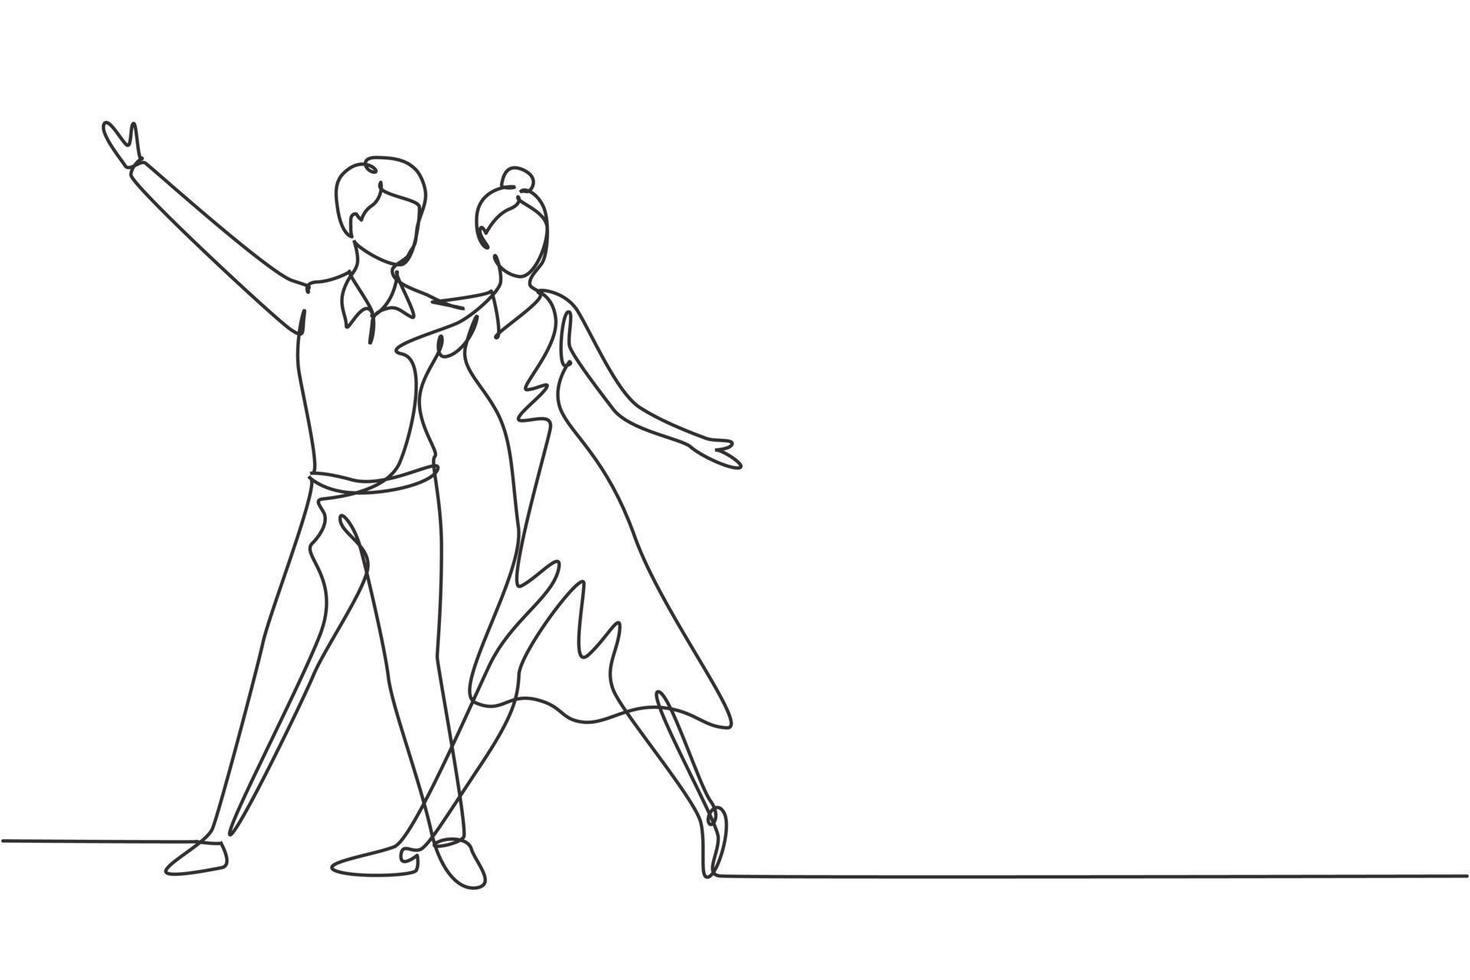 dessin continu d'une ligne homme femme danseuse professionnelle couple dansant le tango, la valse danse ensemble sur la piste de danse du concours de danse. activité amusante. illustration graphique de vecteur de conception de dessin à une seule ligne